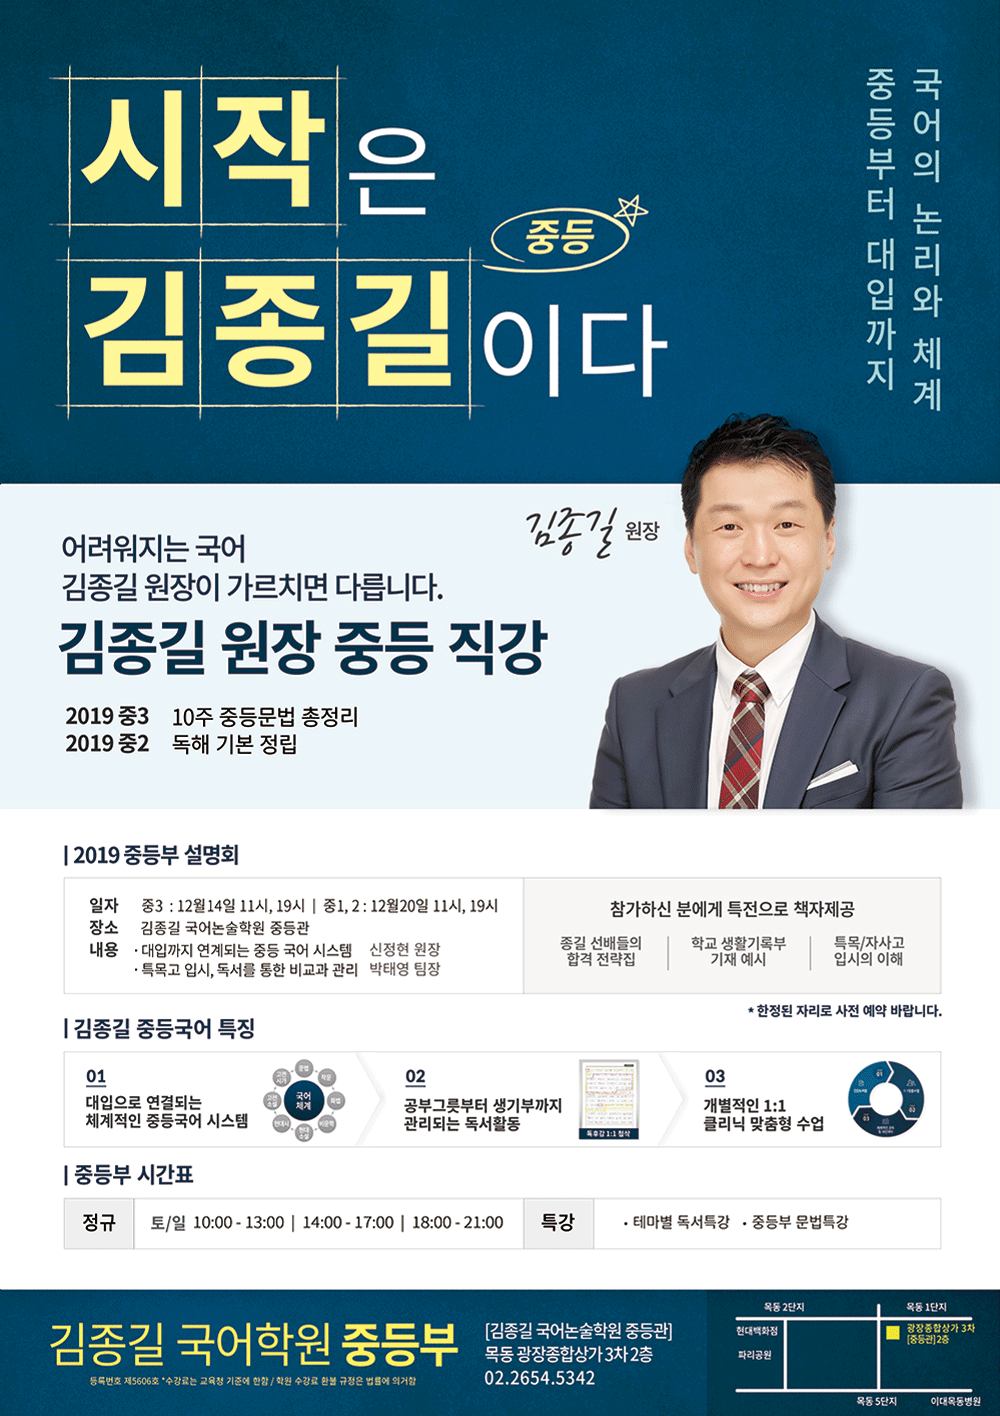 목공아 광고내용_중등부(2018.12.06).gif